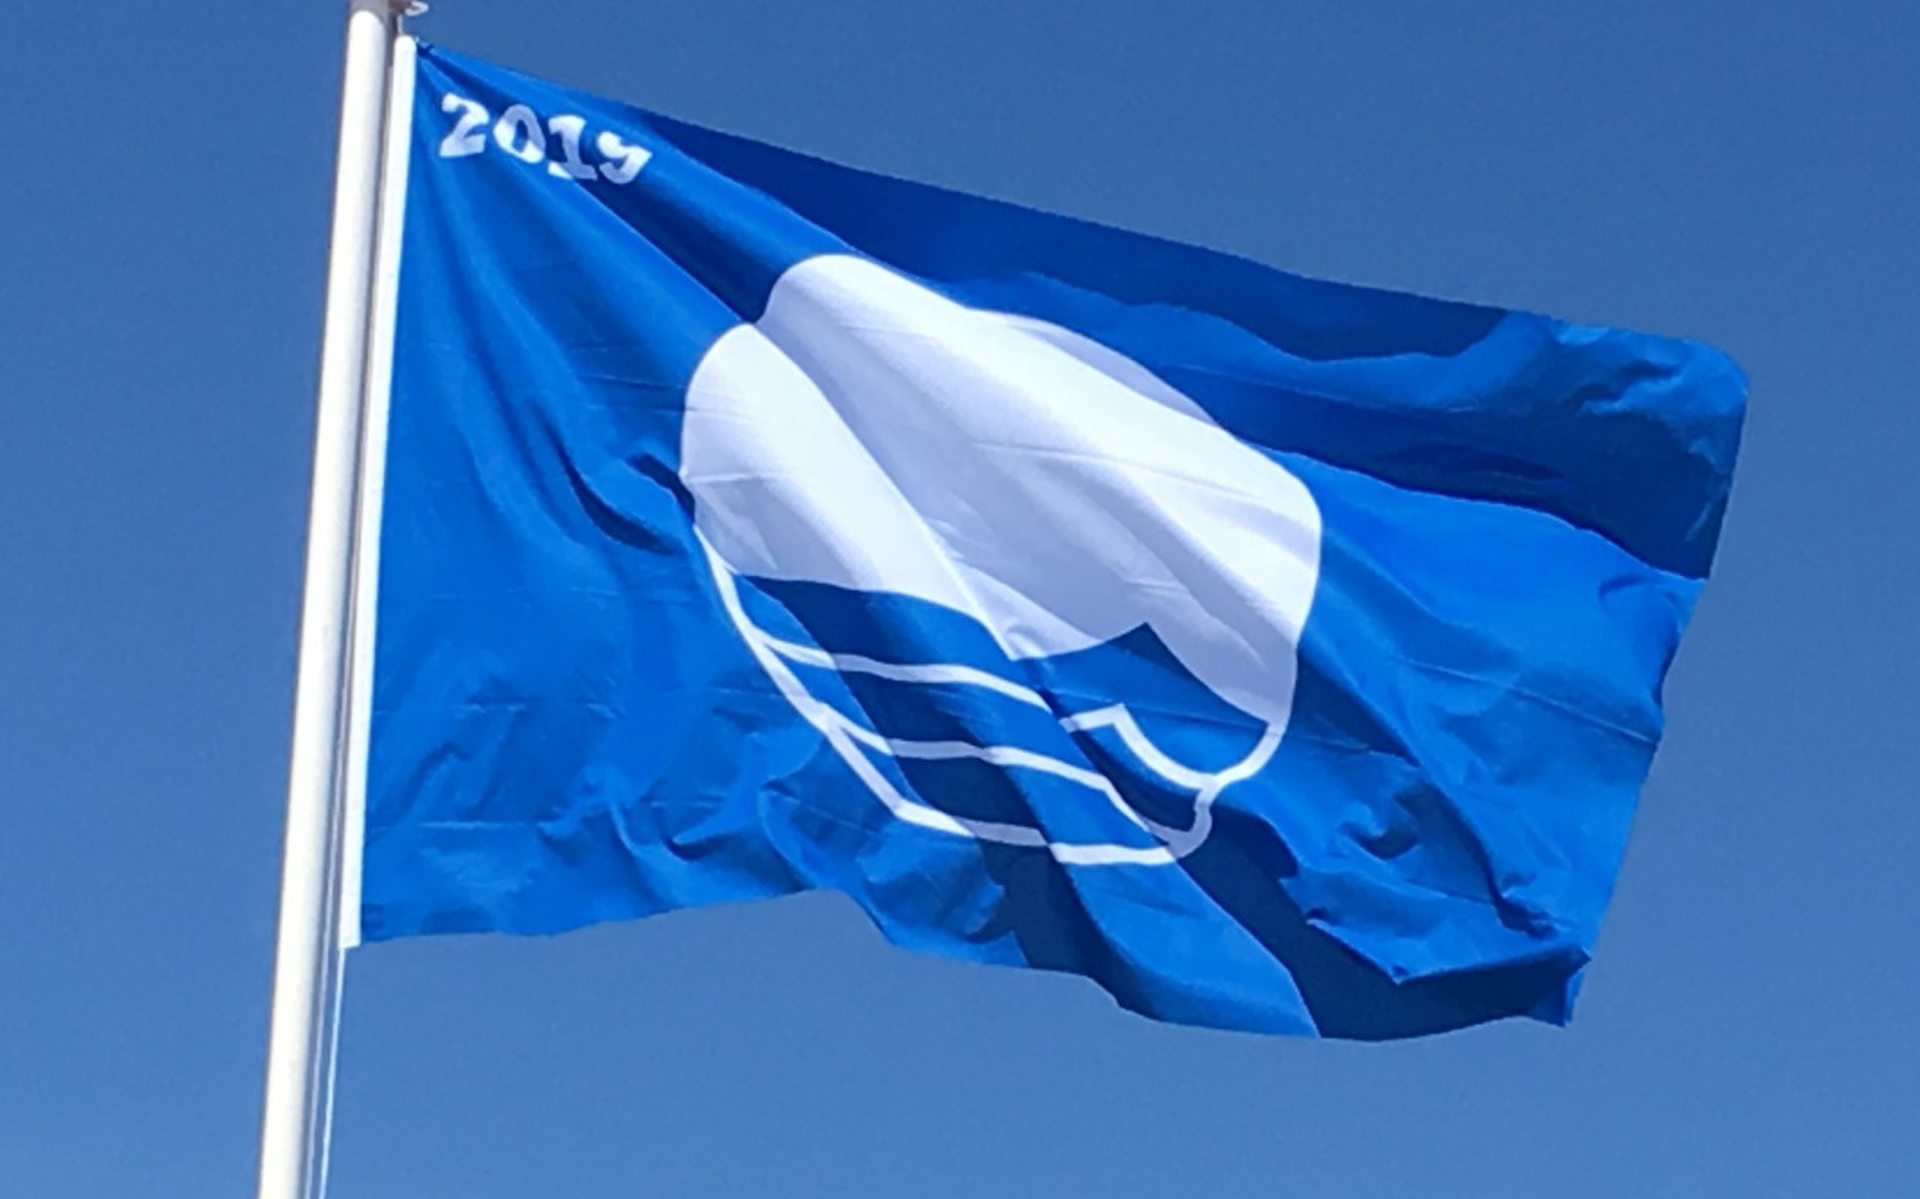 De Blauwe Vlag wordt uitgereikt door de Foundation for Environmental Education (FEE), een onafhankelijke internationale milieuorganisatie in Denemarken.